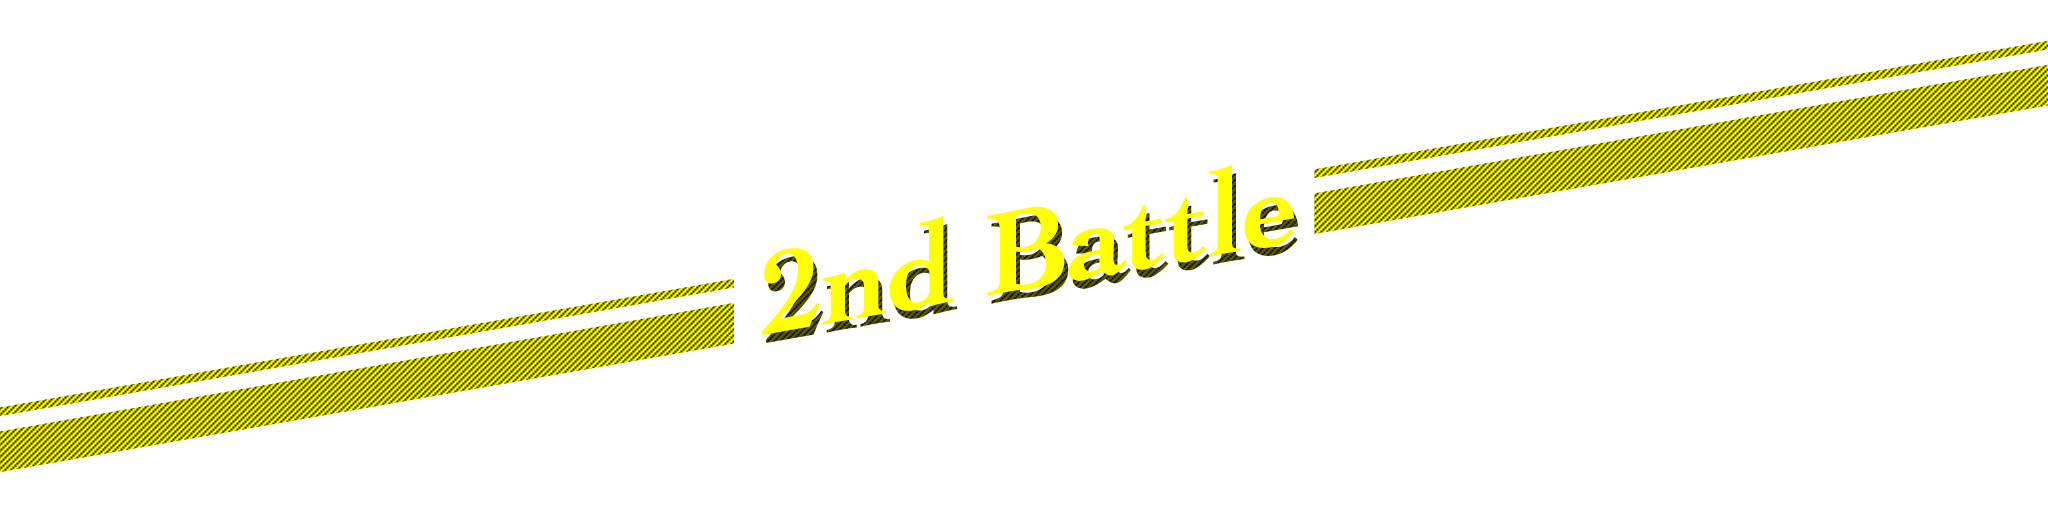 2nd Battle